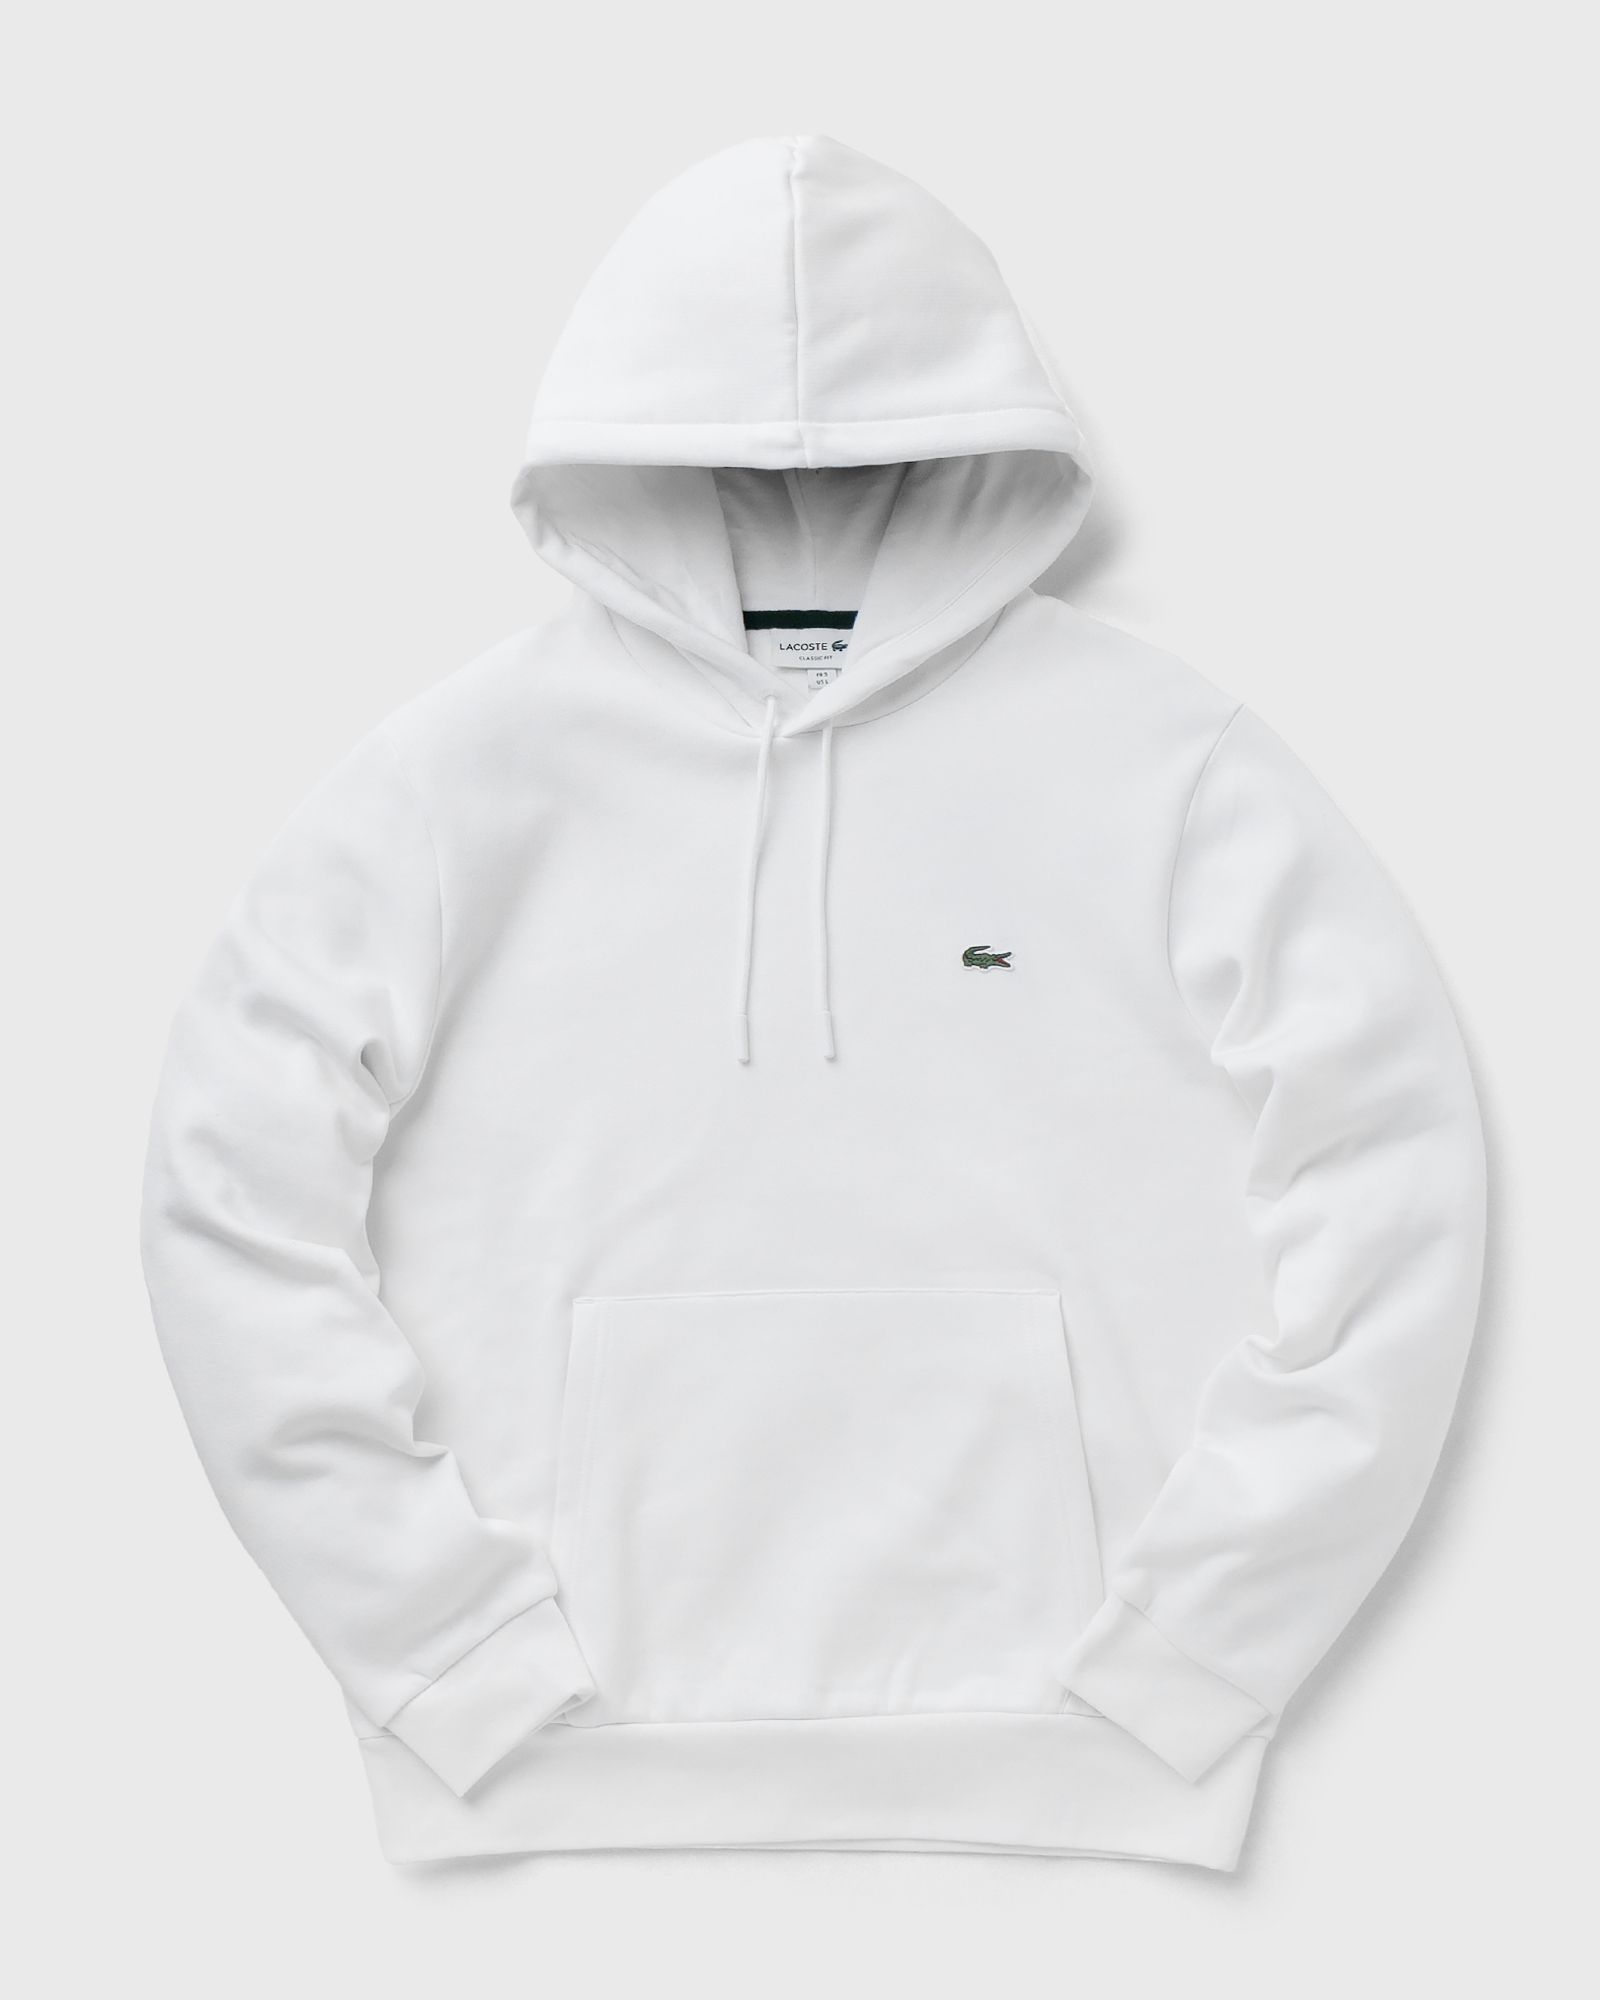 Lacoste - sweatshirt men hoodies white in größe:l